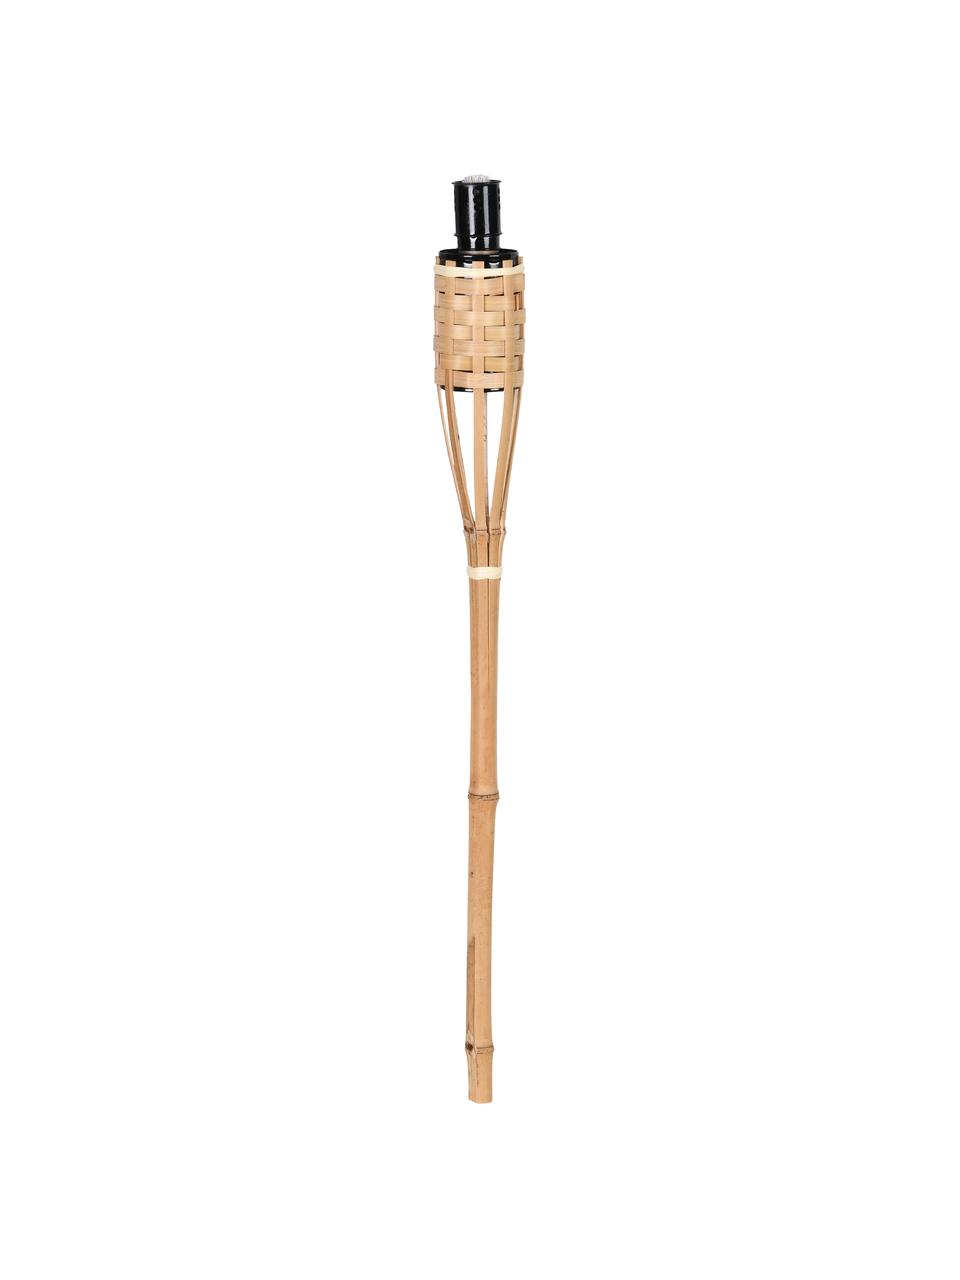 Fackeln Bambus, 3 Stück, Gestell: Bambus, Gefäß: Metall, lackiert, Hellbraun, Ø 6 x H 63 cm